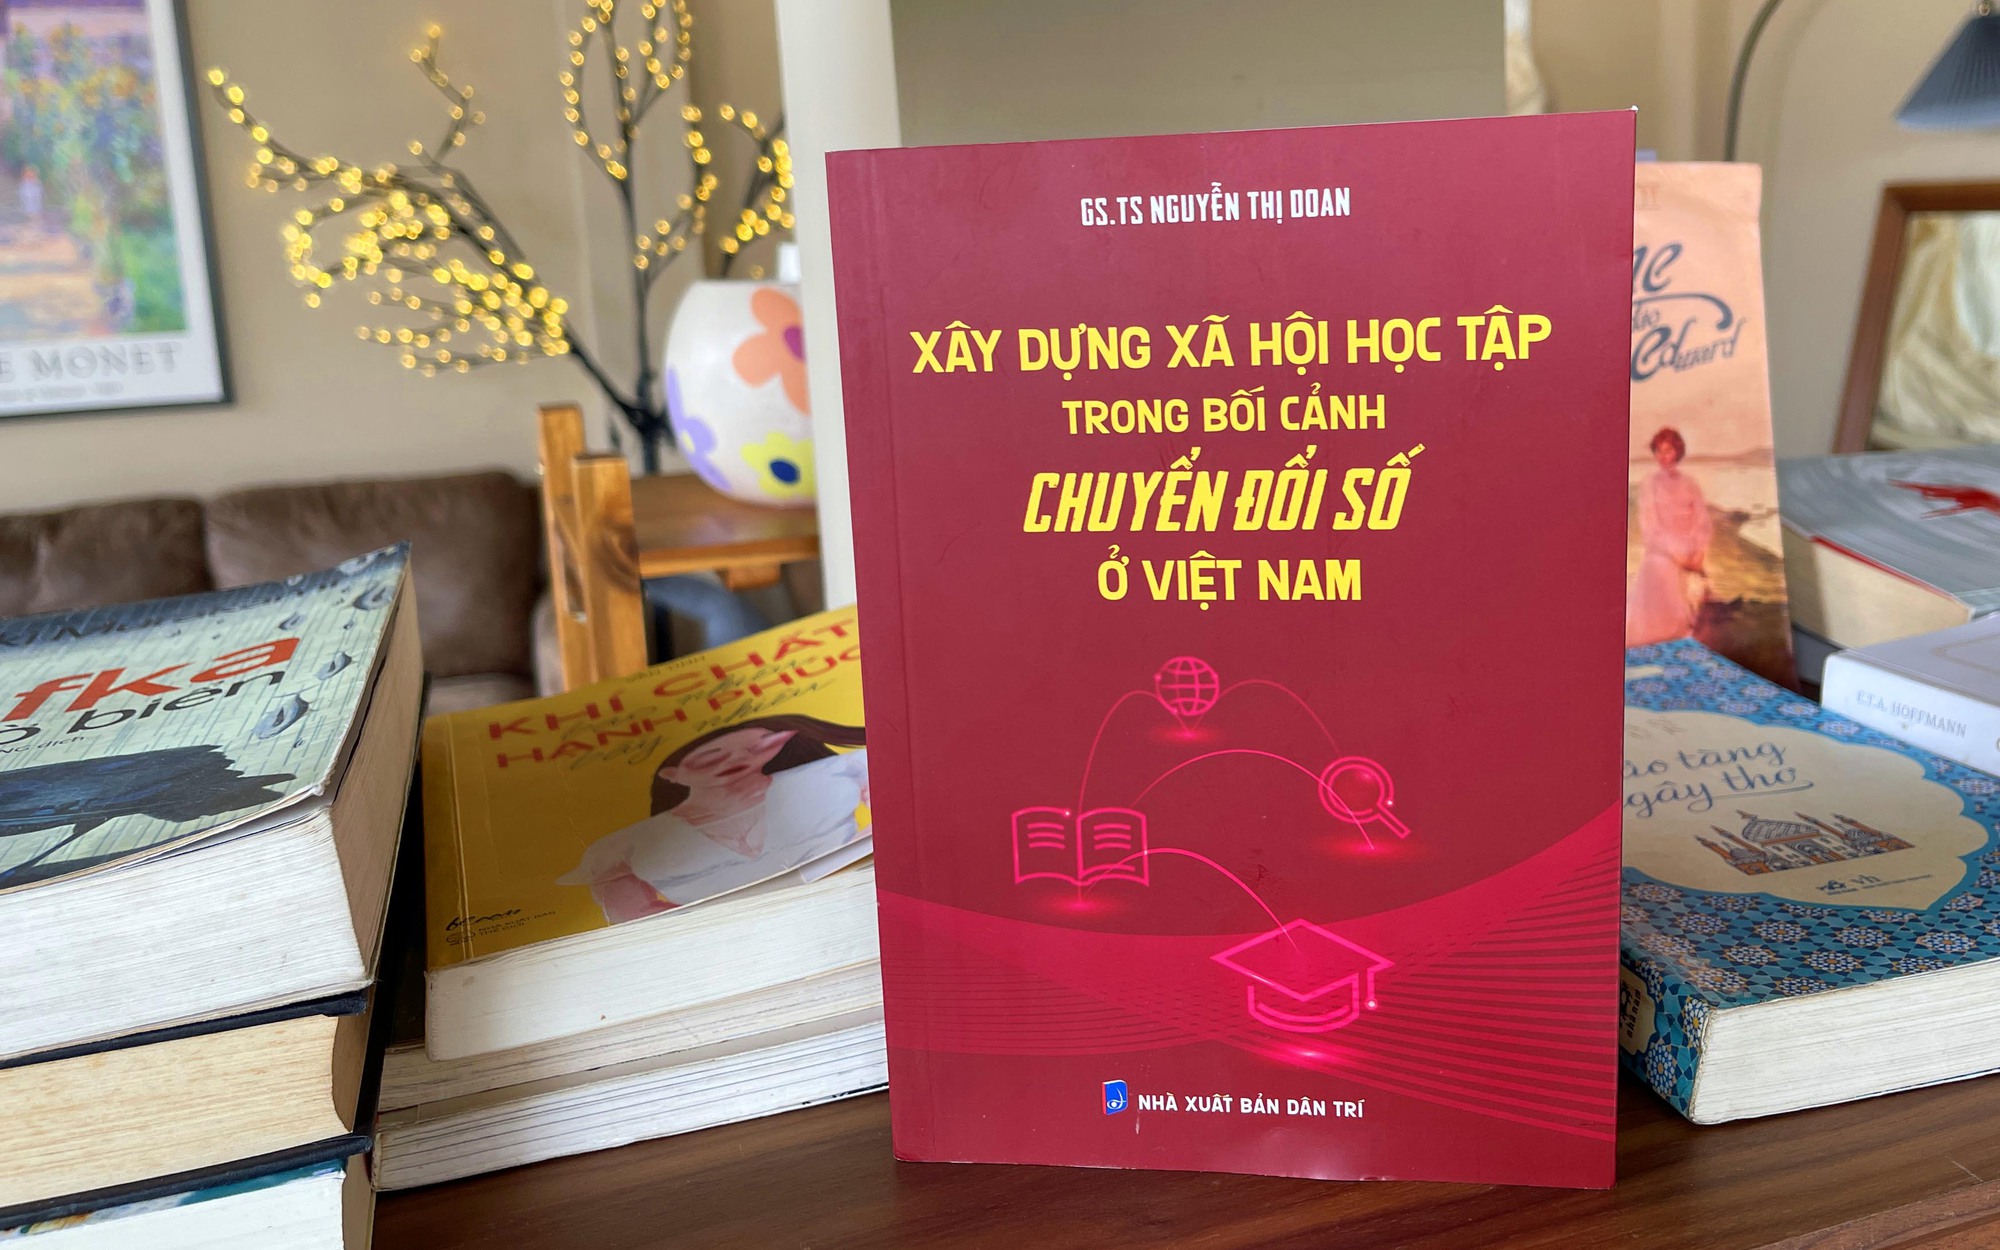 Giáo sư,Tiến sĩ Nguyễn Thị Doan xuất bản sách "Xây dựng xã hội học tập trong bối cảnh chuyển đổi số ở Việt Nam"